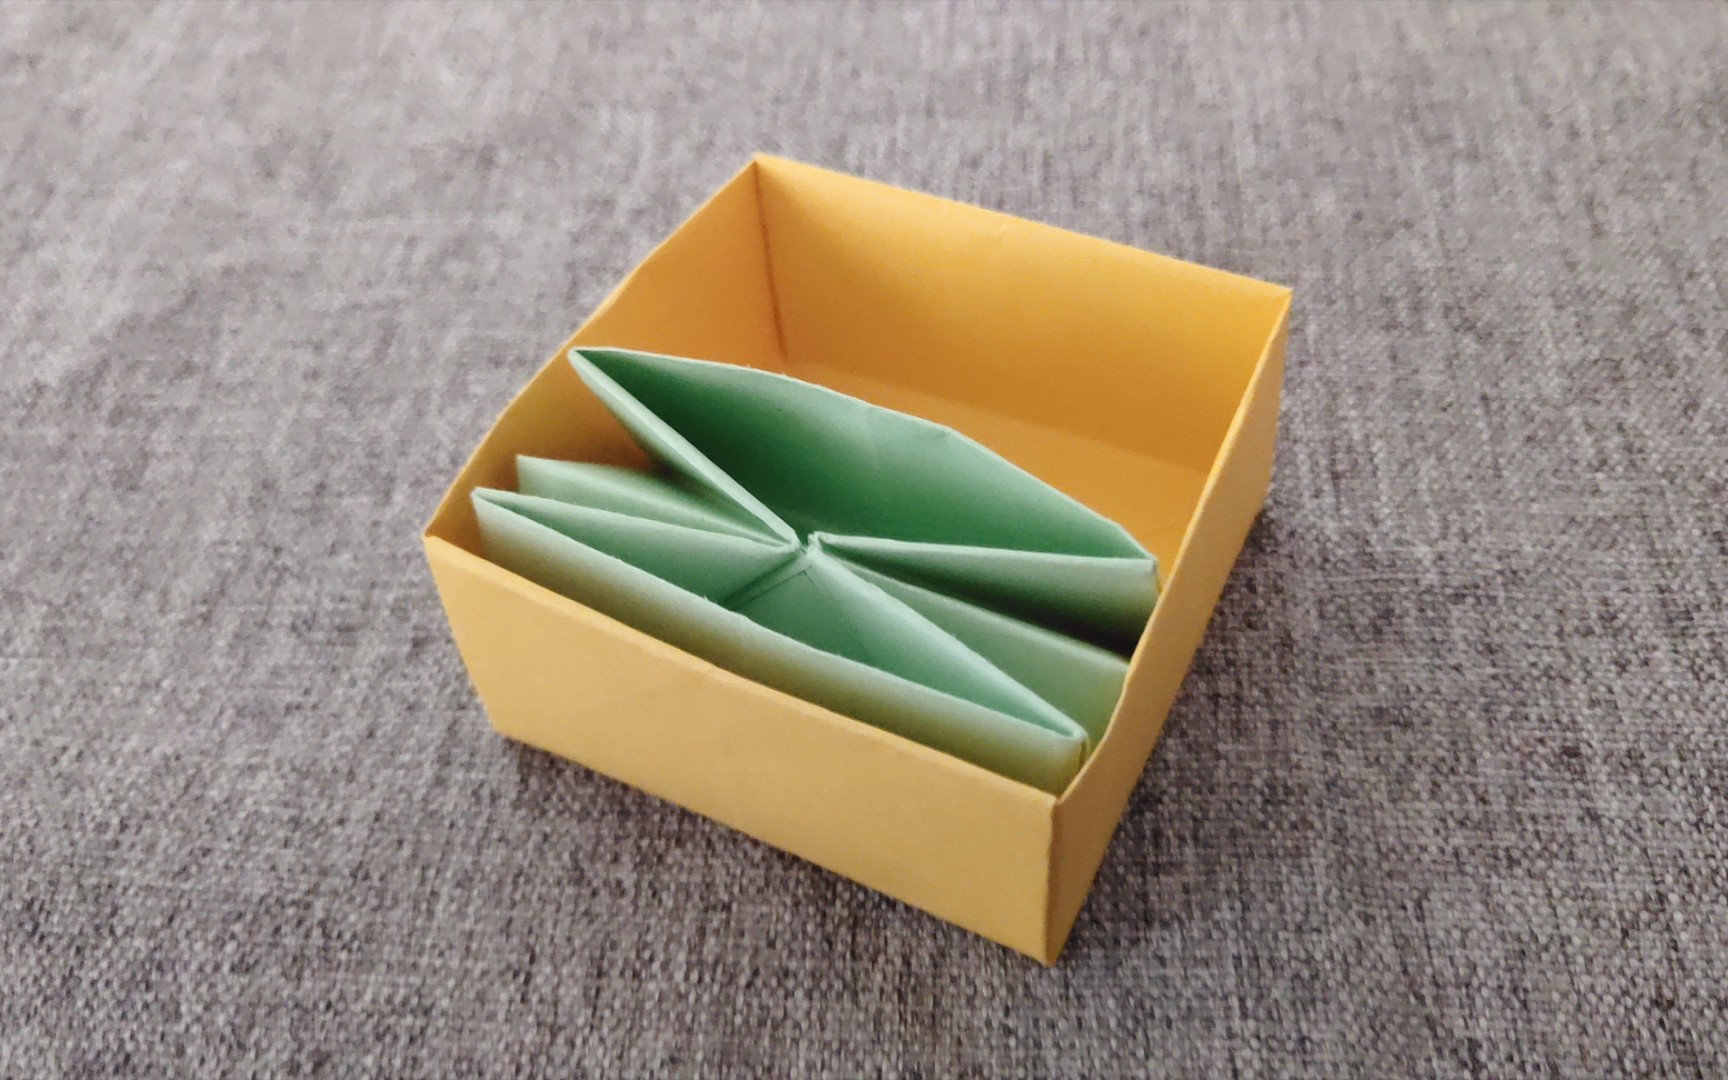 【折纸】超实用方形收纳盒,制作简单使用方便,快来试试